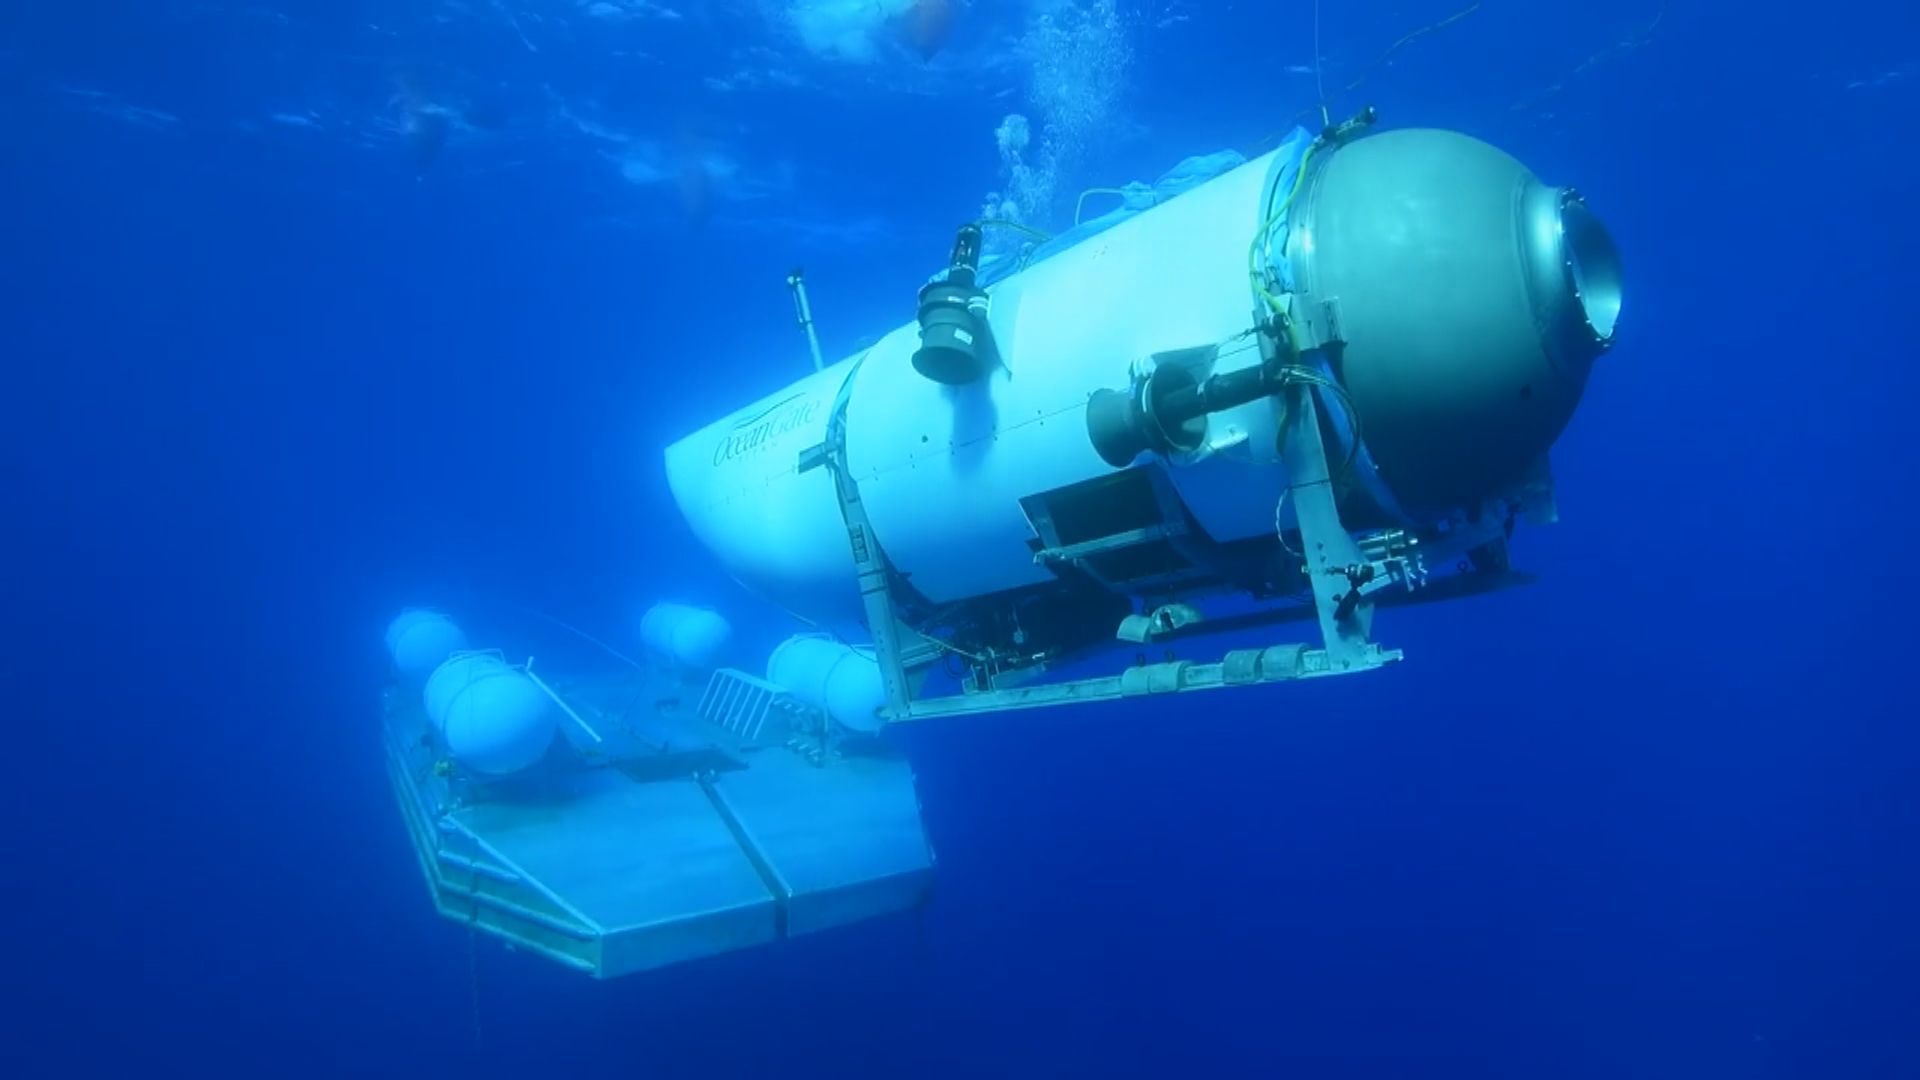 加拿大就潛水器泰坦內爆解體展開調查